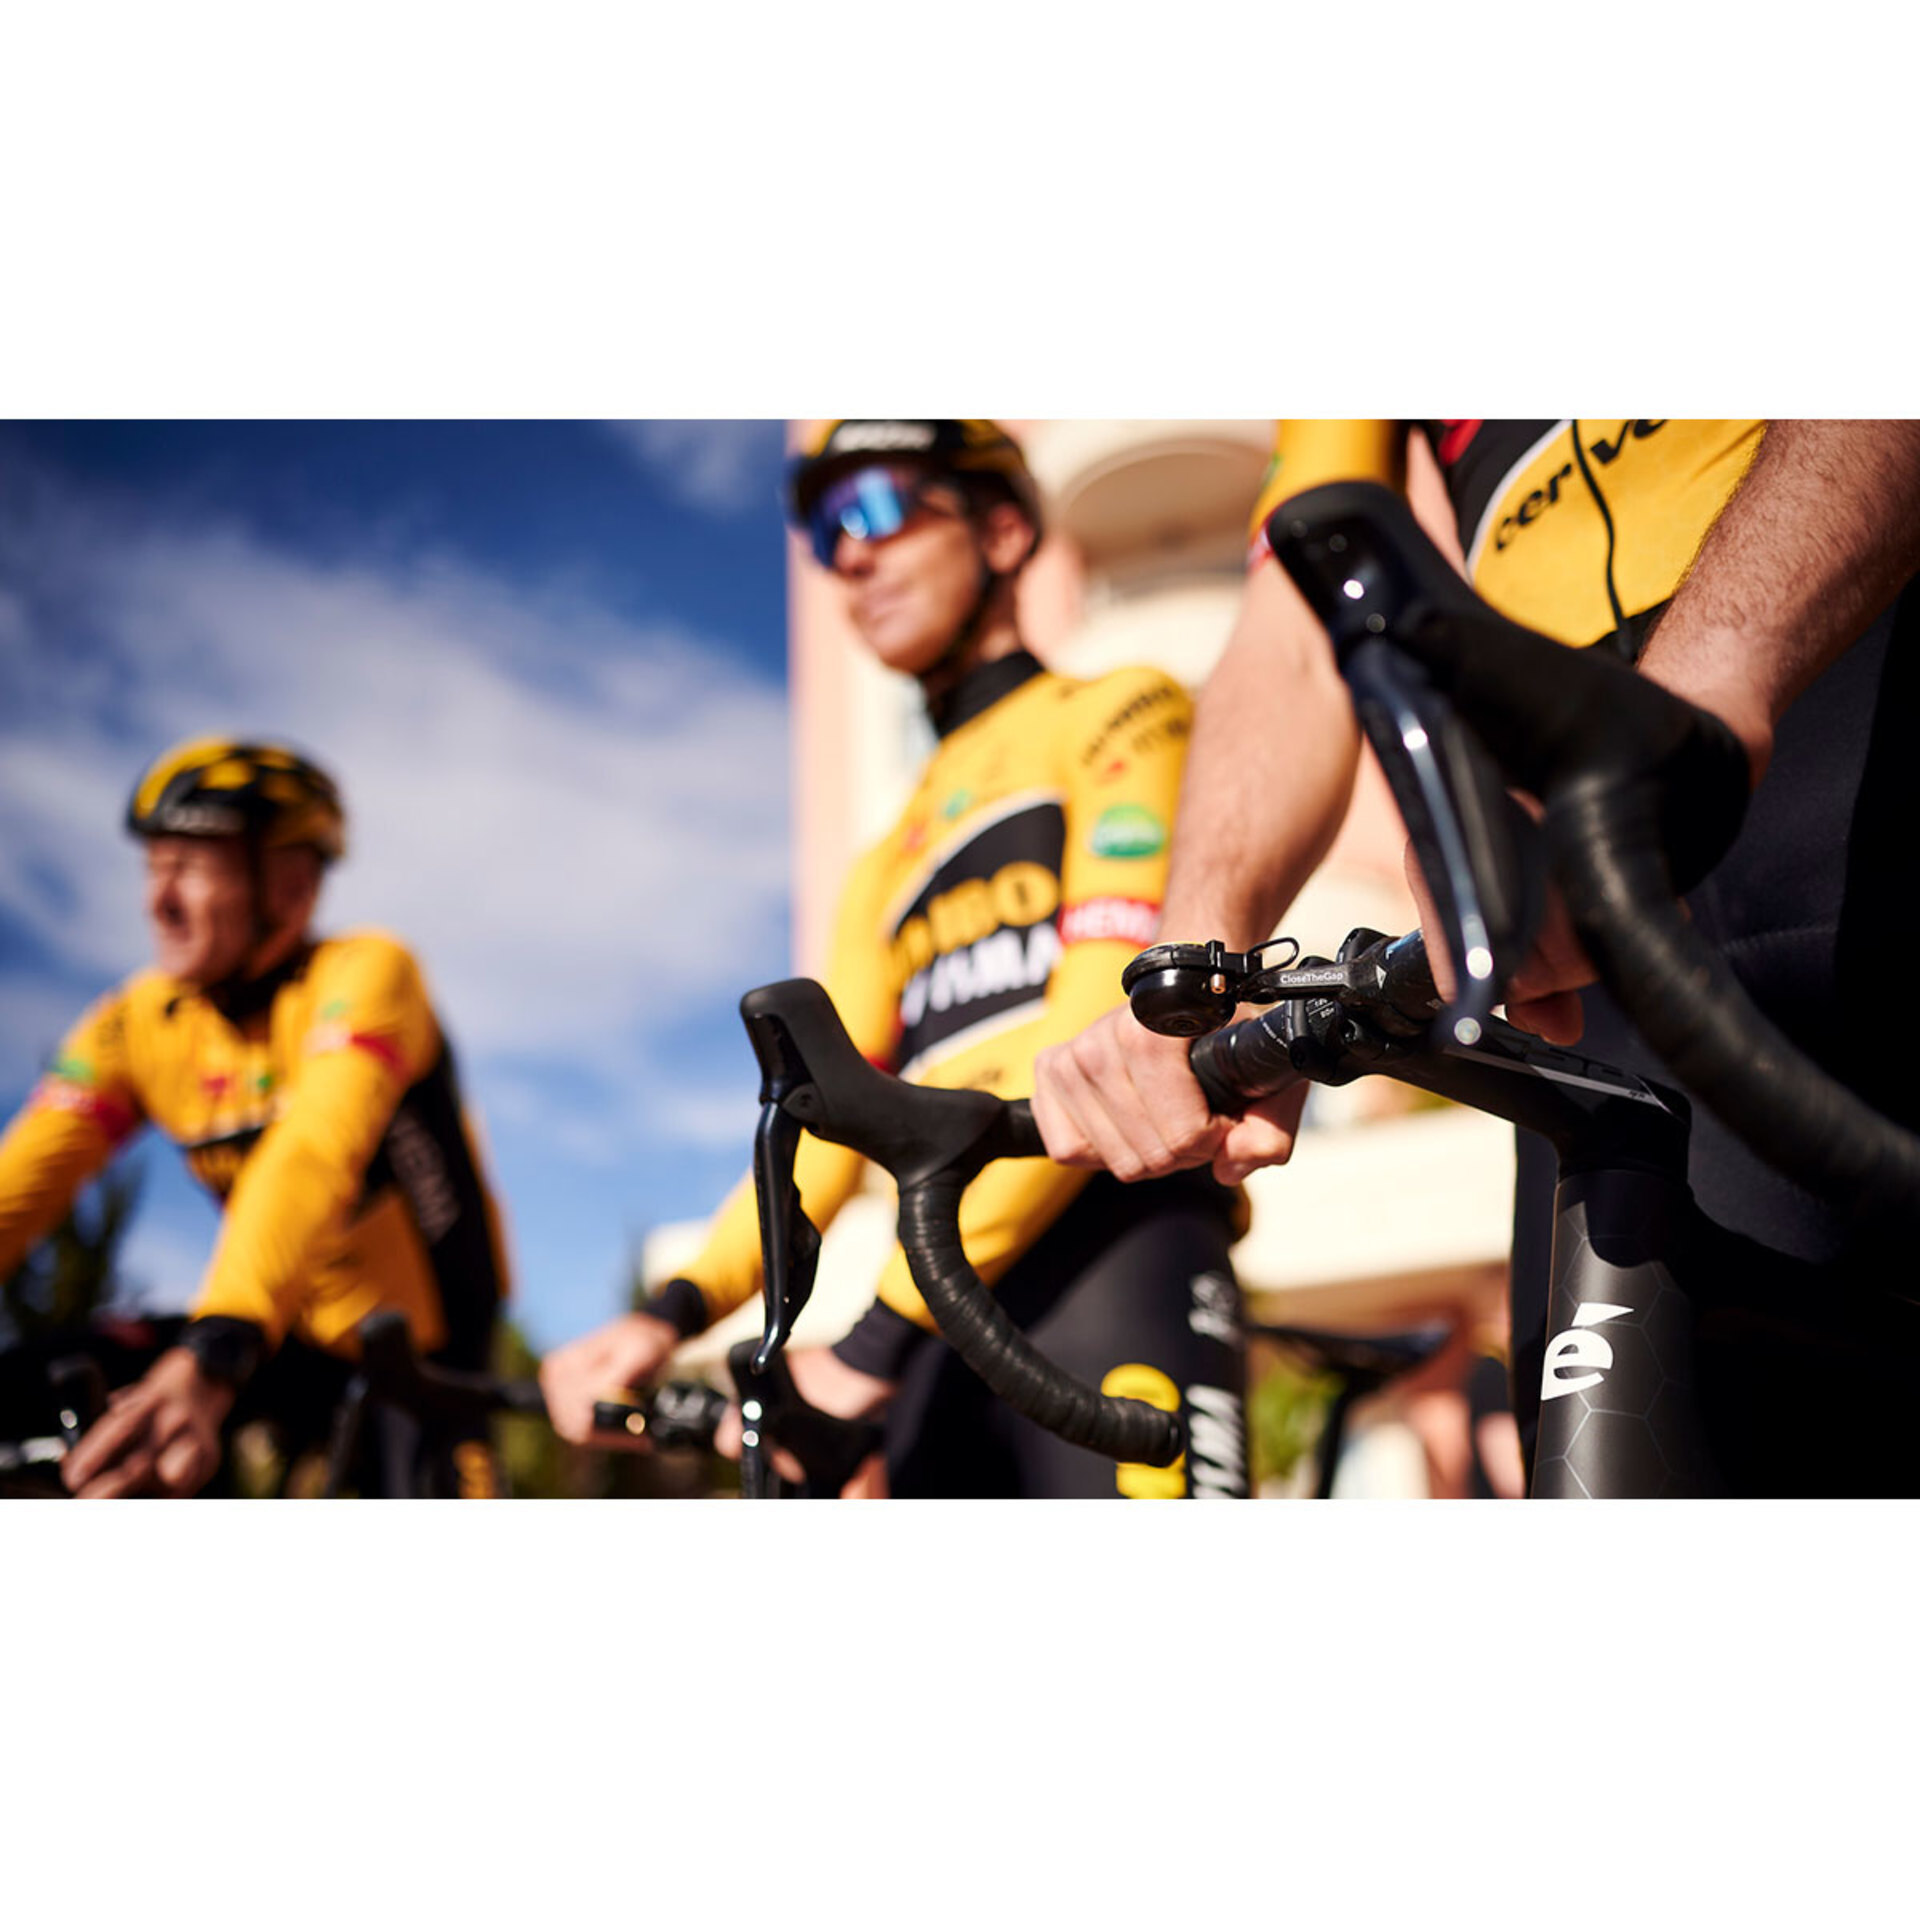 CloseTheGap HideMyBell Regular2 TdF Team Visma-Lease a Bike Editie